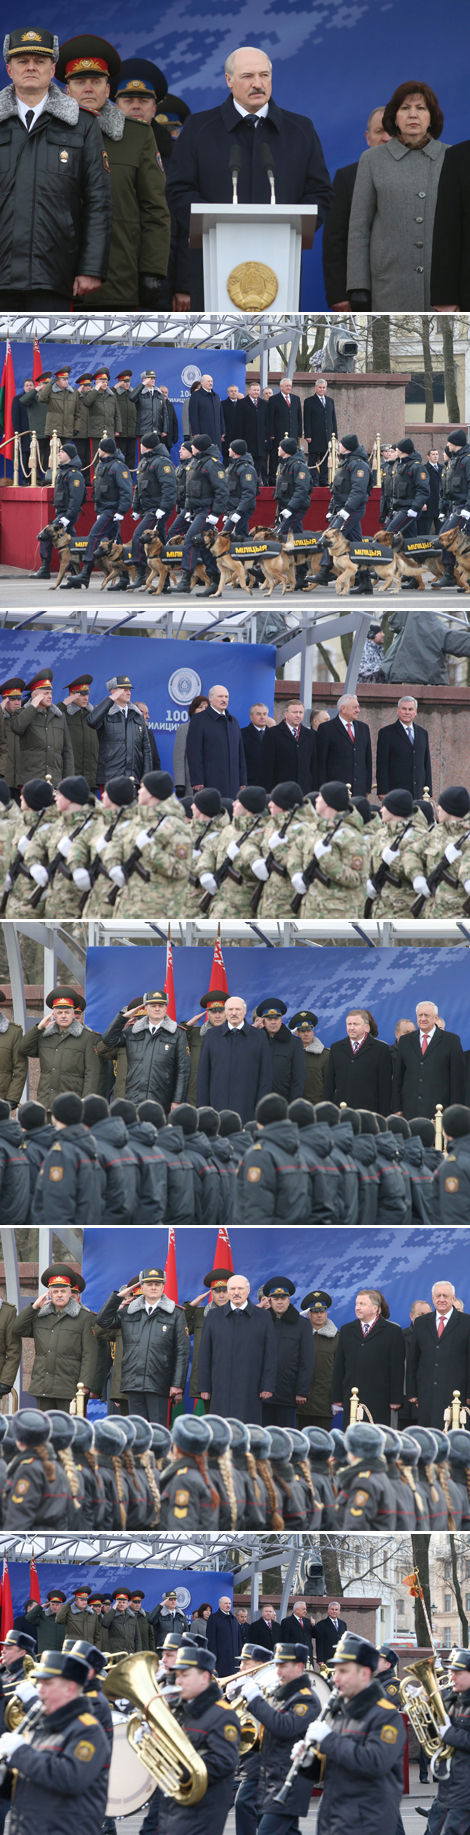 Президент Беларуси Александр Лукашенко на торжественном марше в честь 100-летия образования белорусской милиции